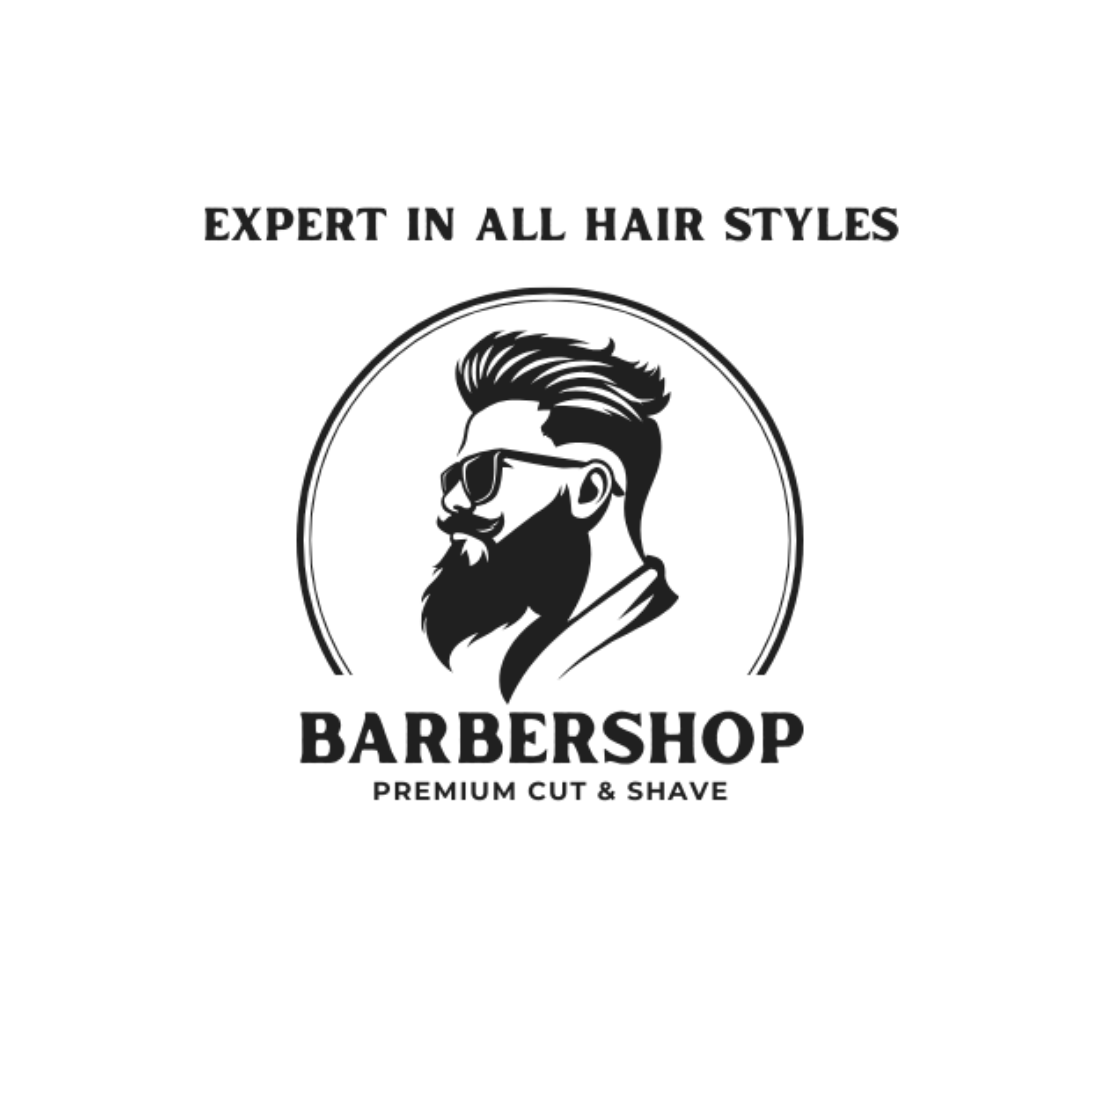 Gentlemen's Haven: Barbering Excellence preview image.